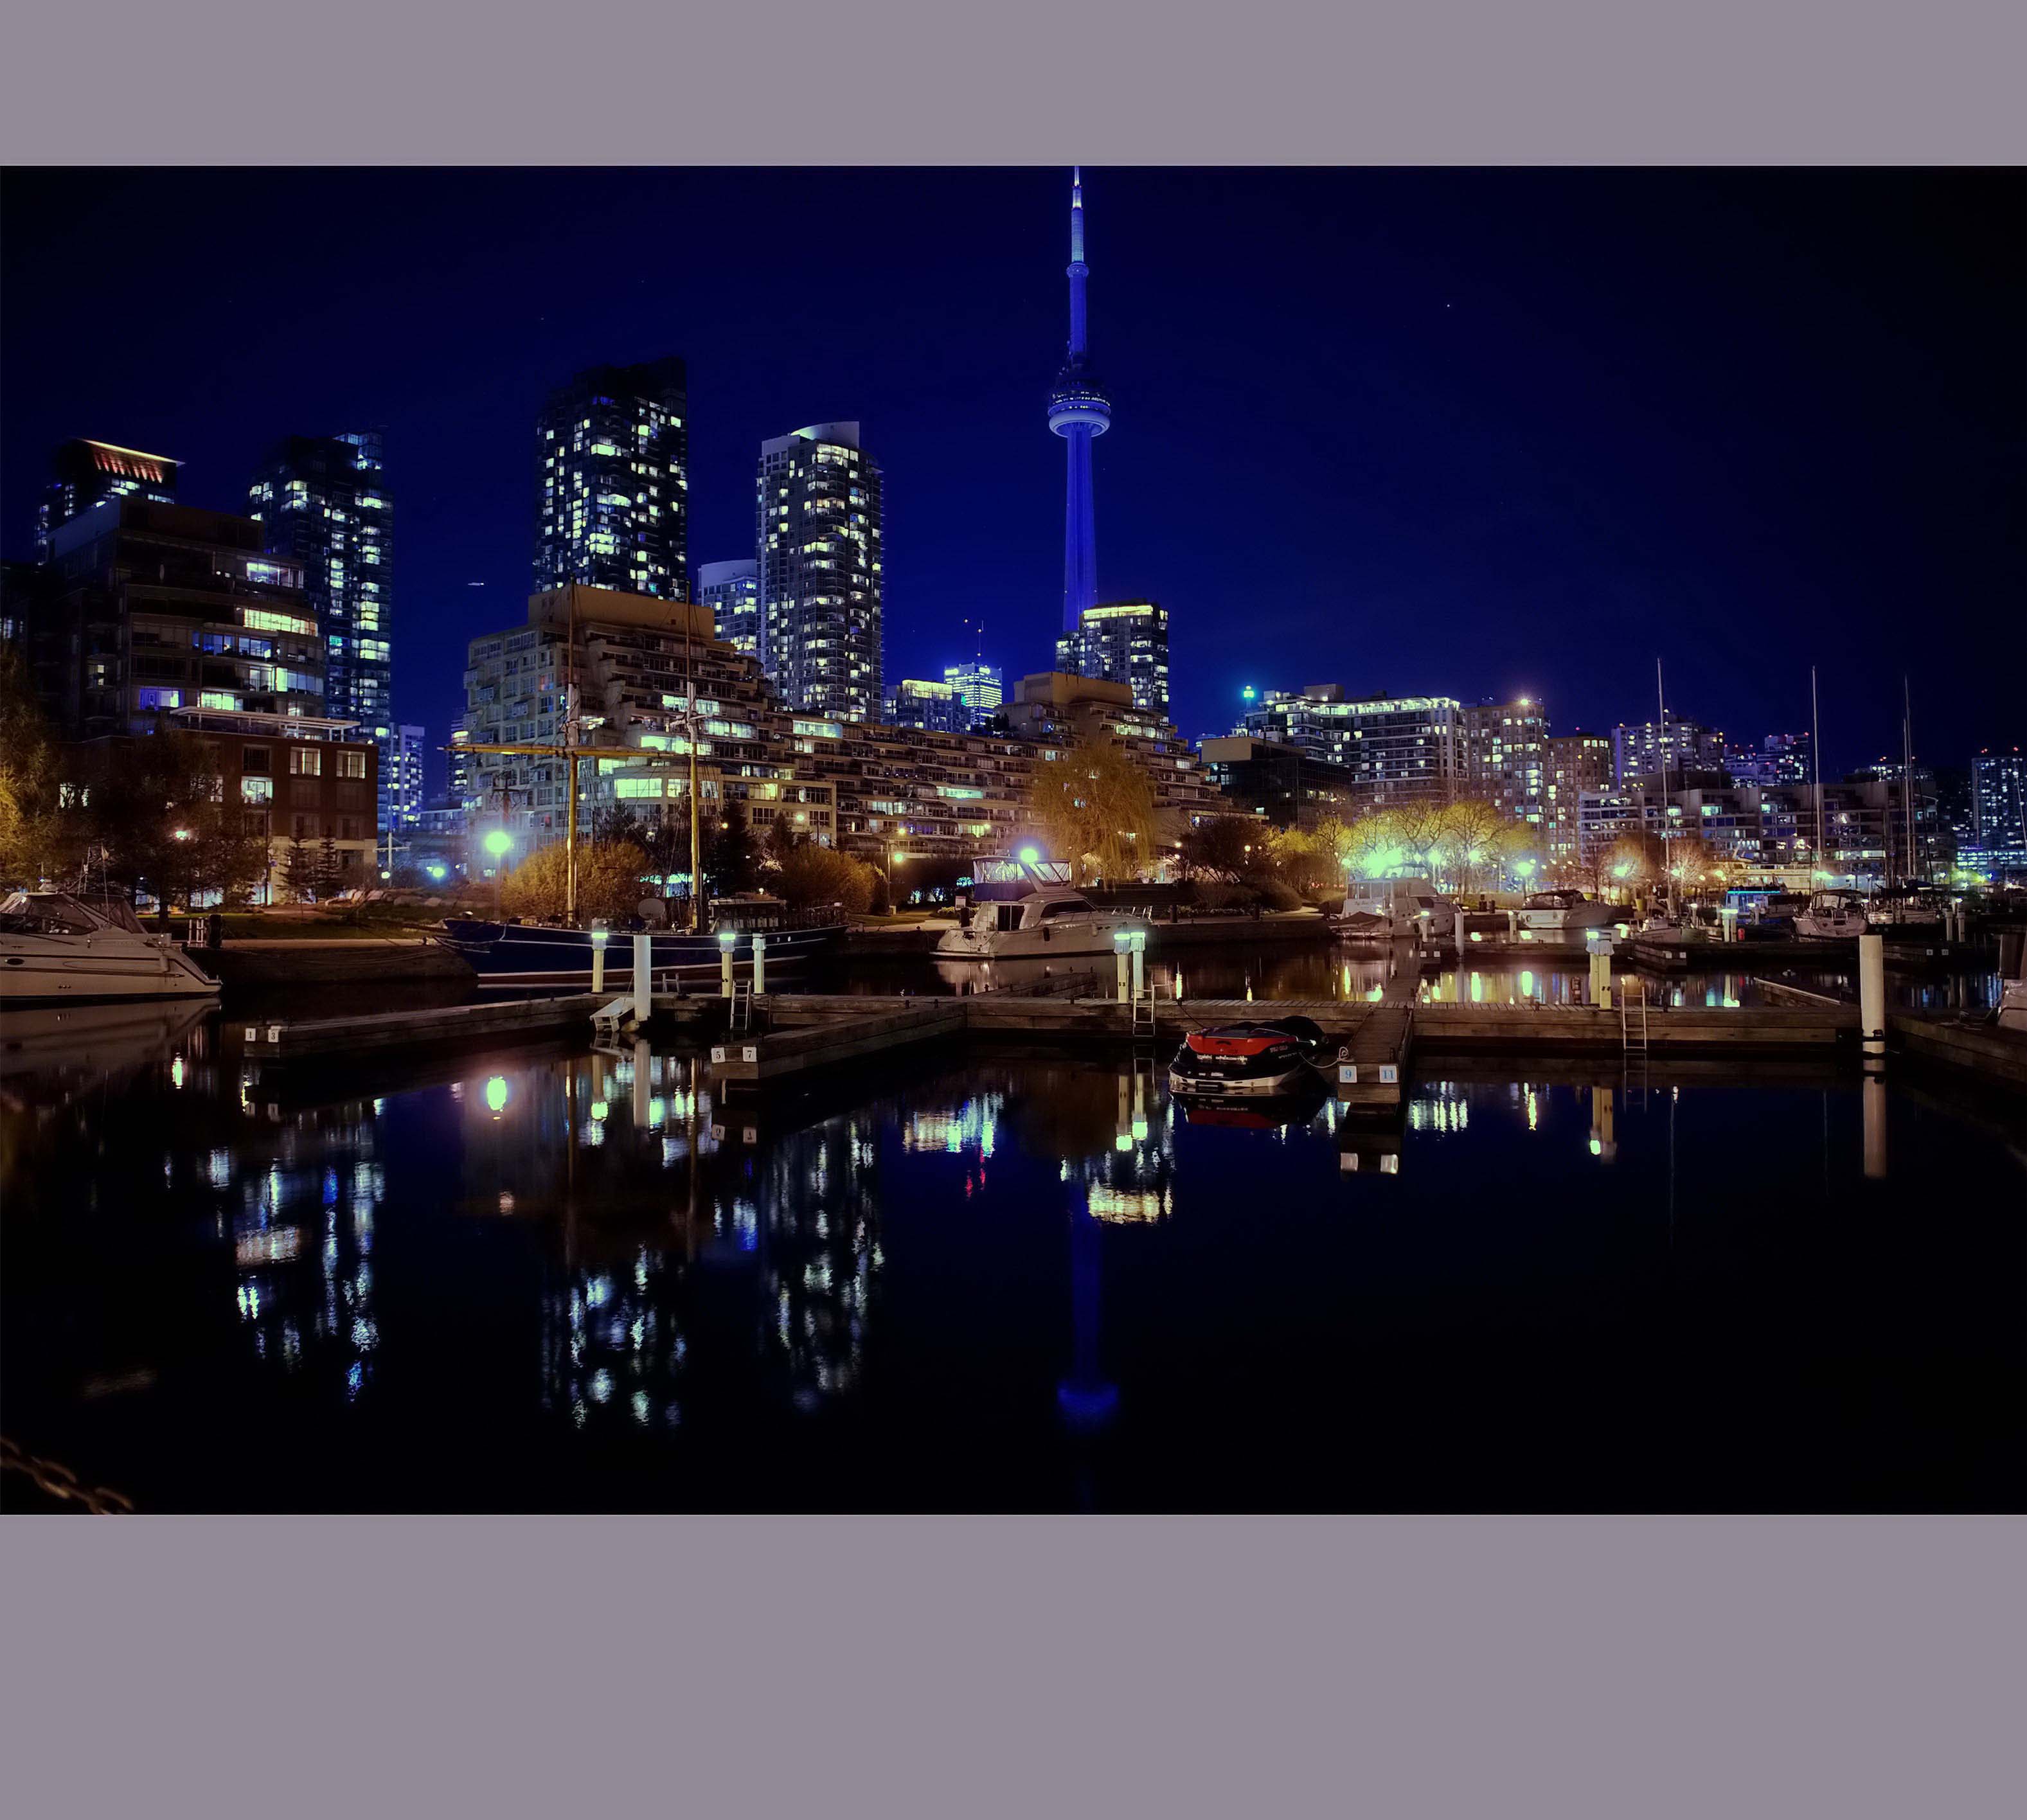 【加拿大风光】多伦多城市夜景 Spectacular Night Views of Toronto_哔哩哔哩 (゜-゜)つロ 干杯~-bilibili